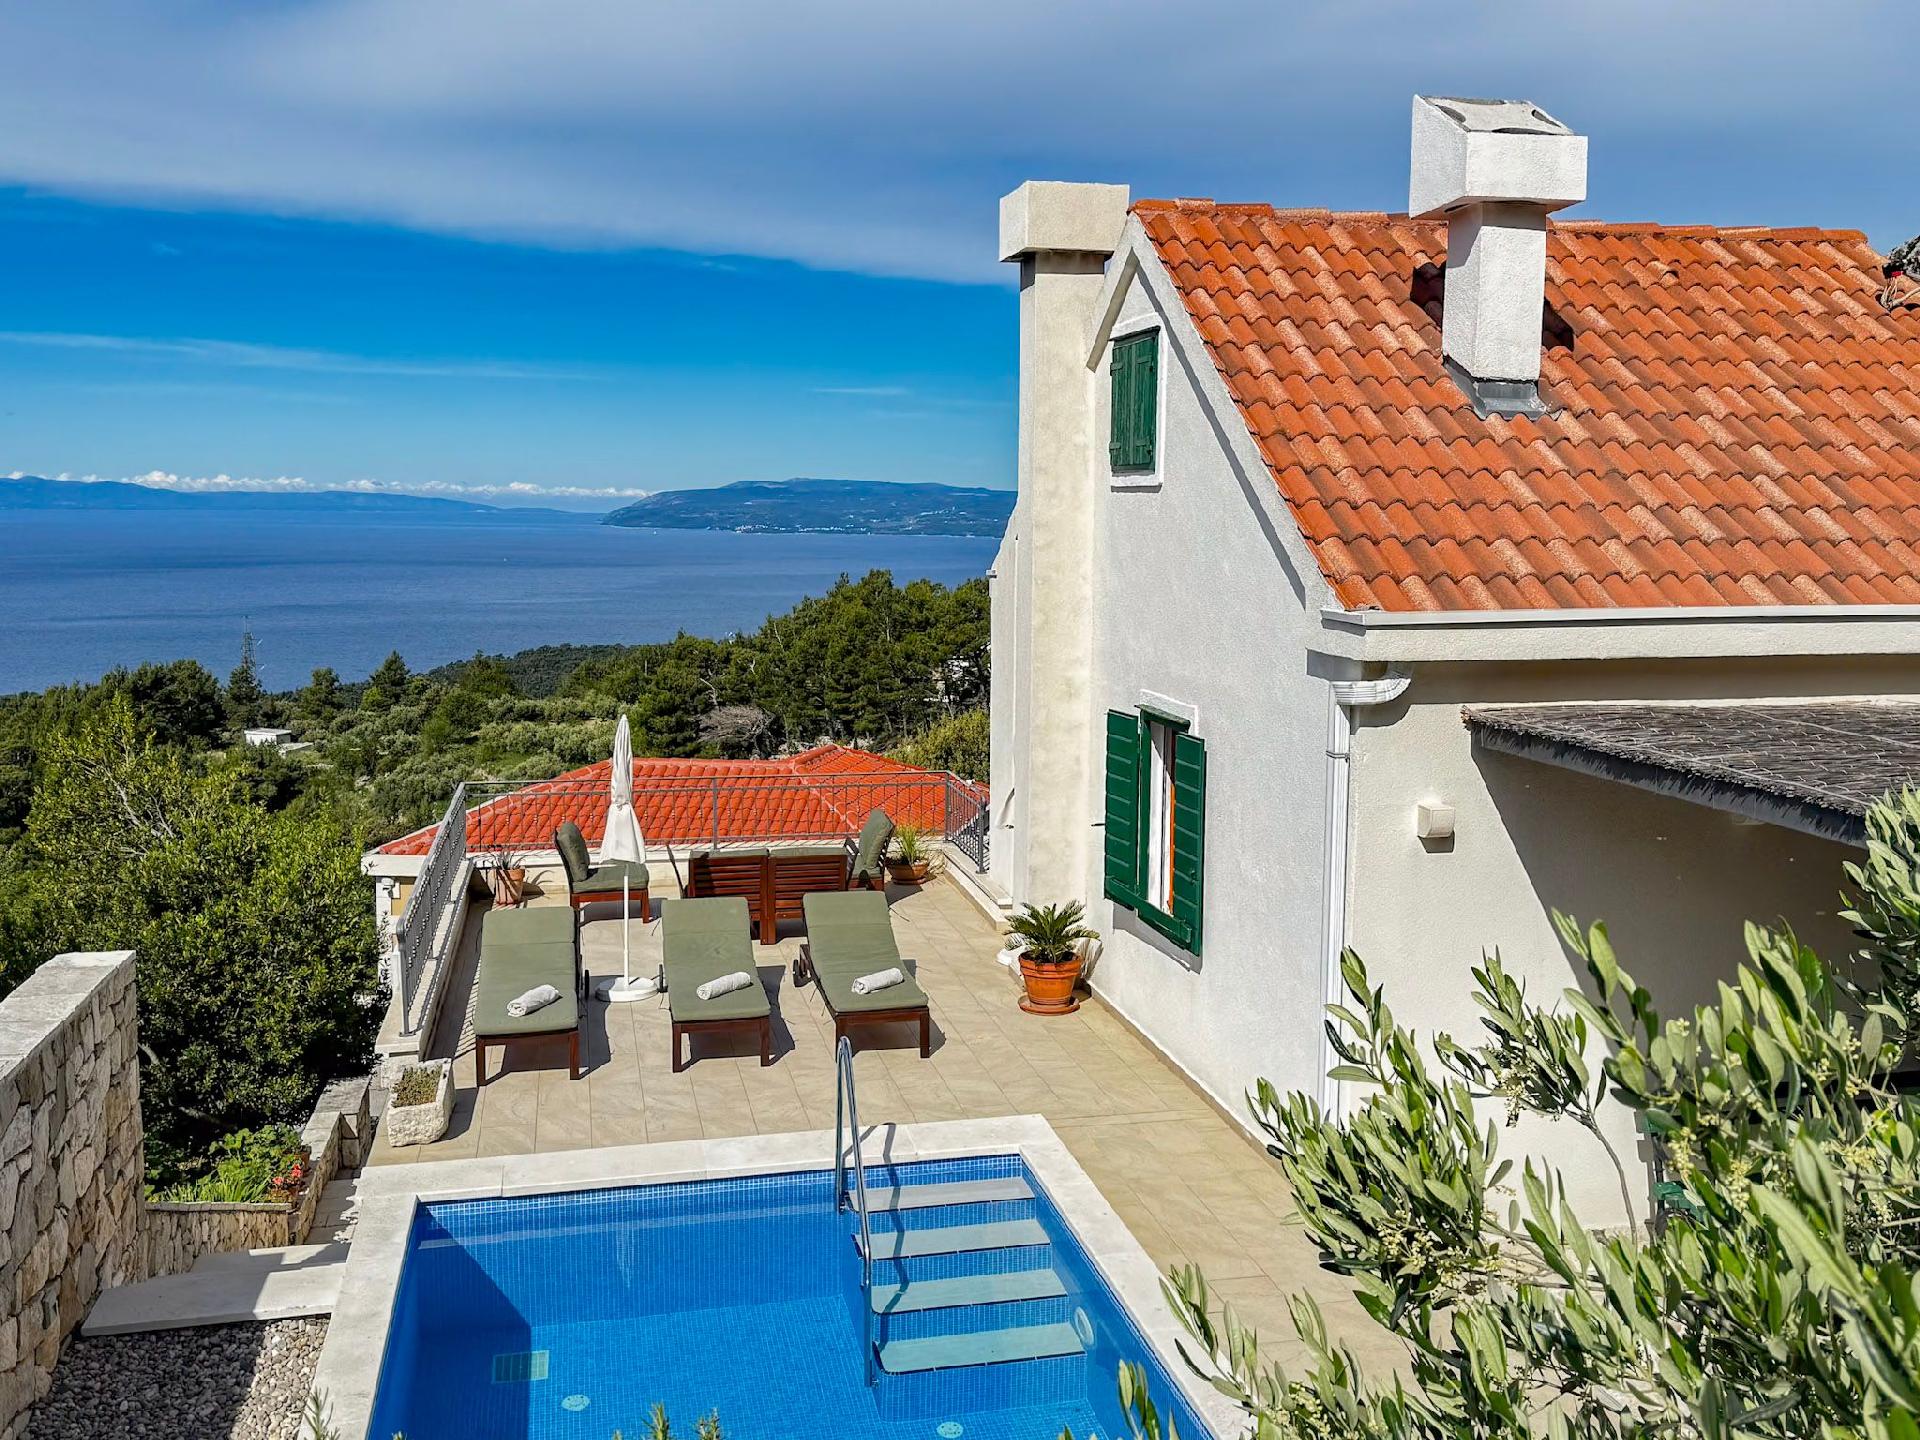 Ferienhaus mit Privatpool für 4 Personen  + 2 Ferienhaus in Kroatien